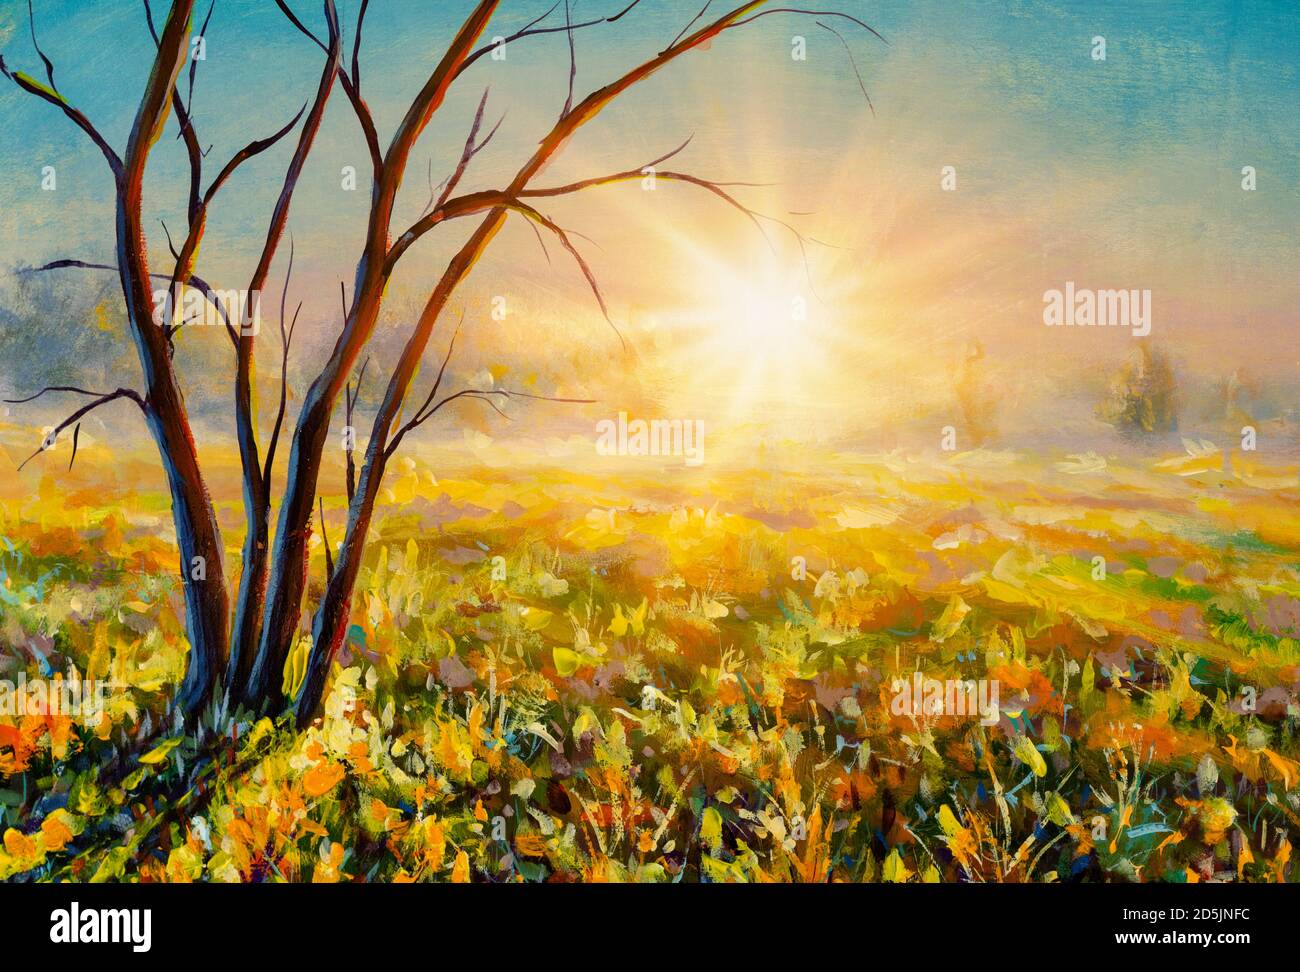 Original Ölgemälde von Wiese Kunstwerk Sonnenaufgang Alamy in Sonnenuntergang Leinwand. nebligen Feld auf Moderner - Stockfotografie Impressionismus.Impasto Morgen